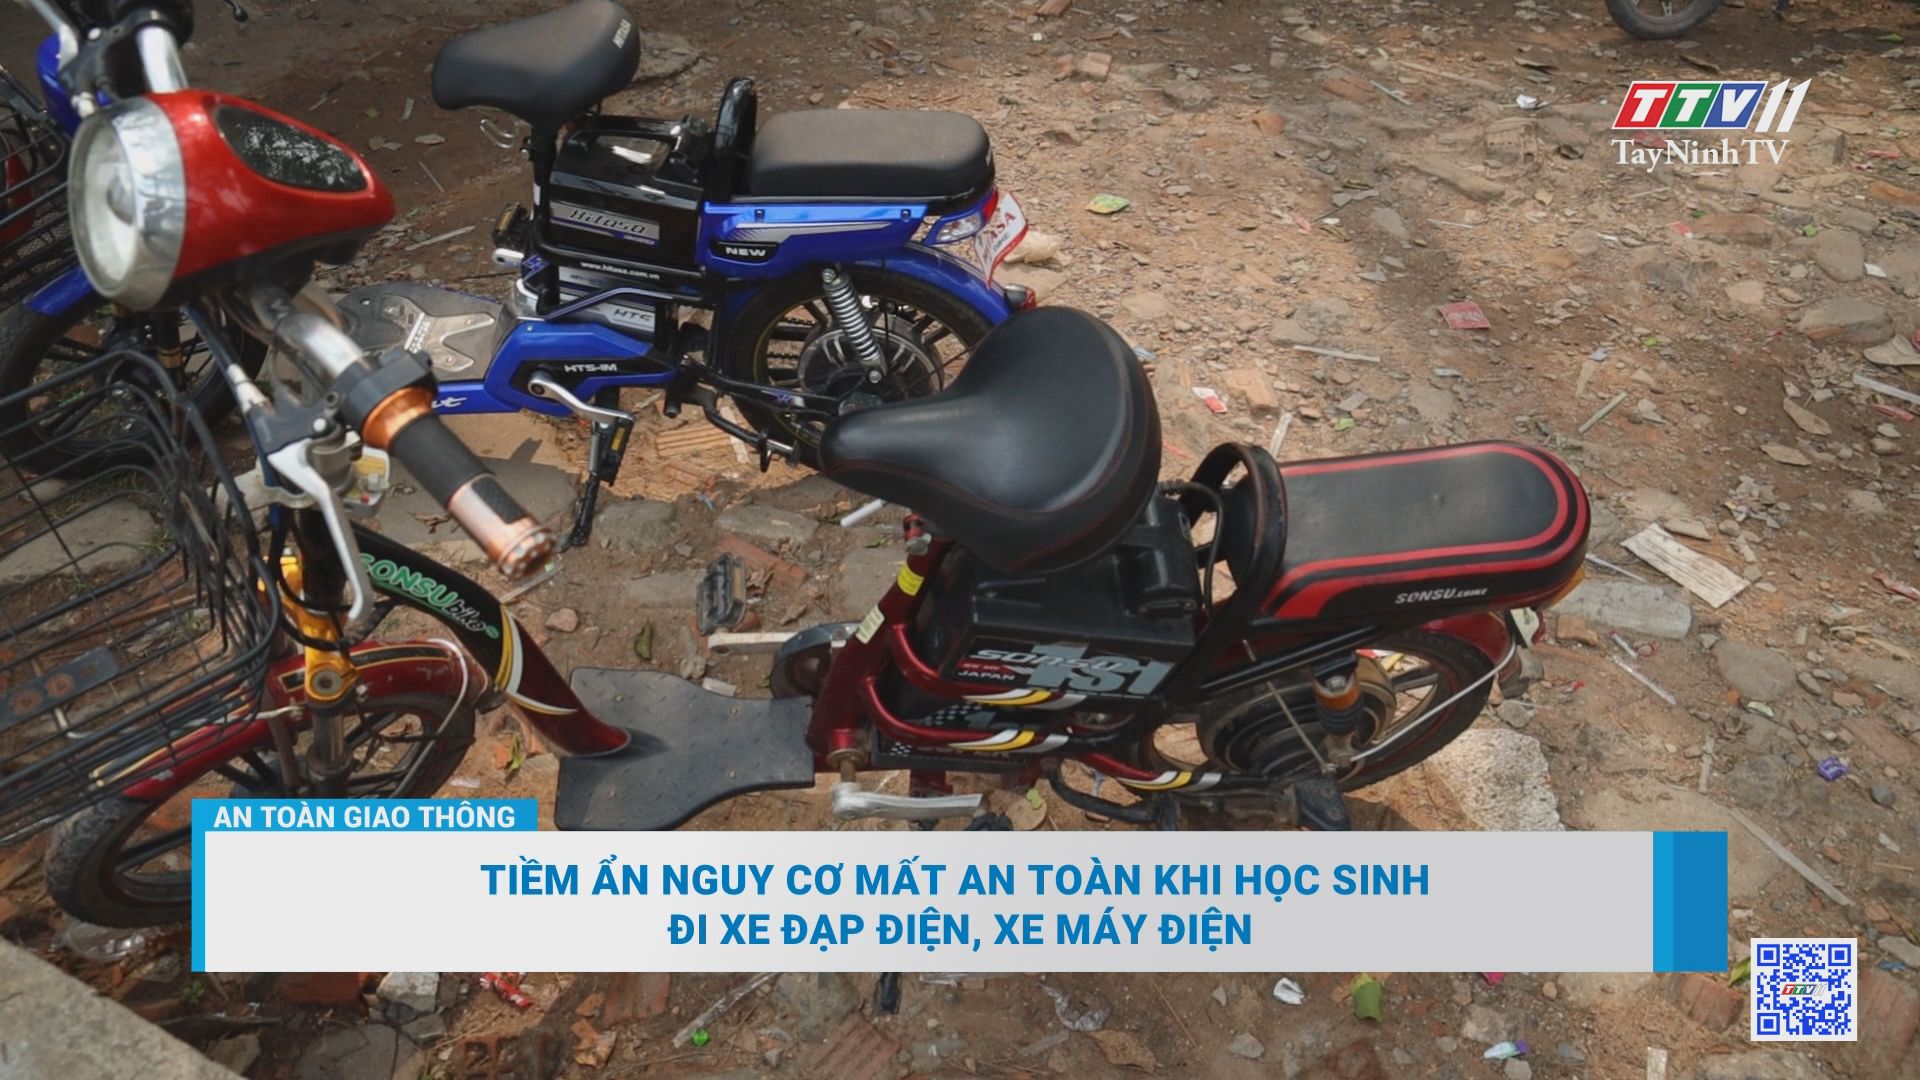 Tiềm ẩn nguy cơ mất an toàn khi học sinh đi xe đạp điện, xe máy điện | AN TOÀN GIAO THÔNG | TayNinhTV